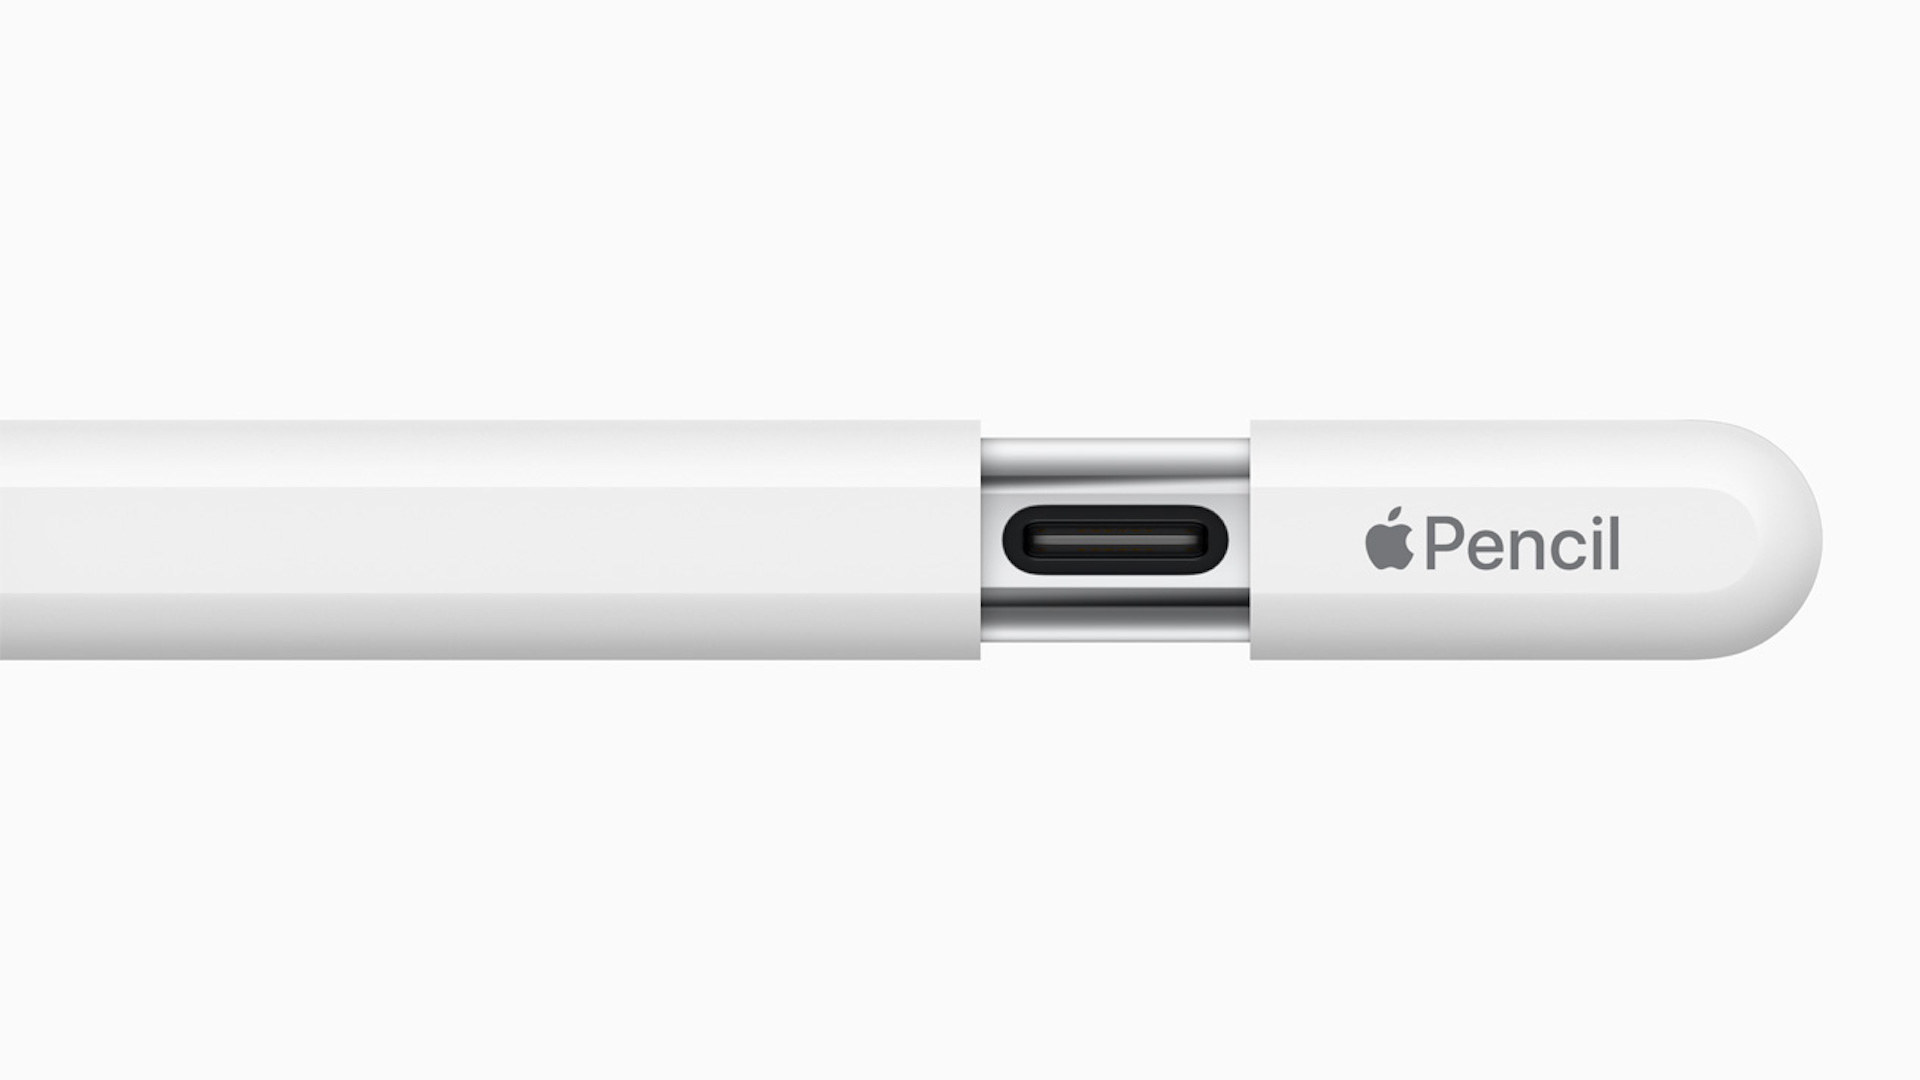 اپل از مداد مقرون به صرفه تر، تغییر دهنده بازی در خلاقیت دیجیتال، رونمایی کرد